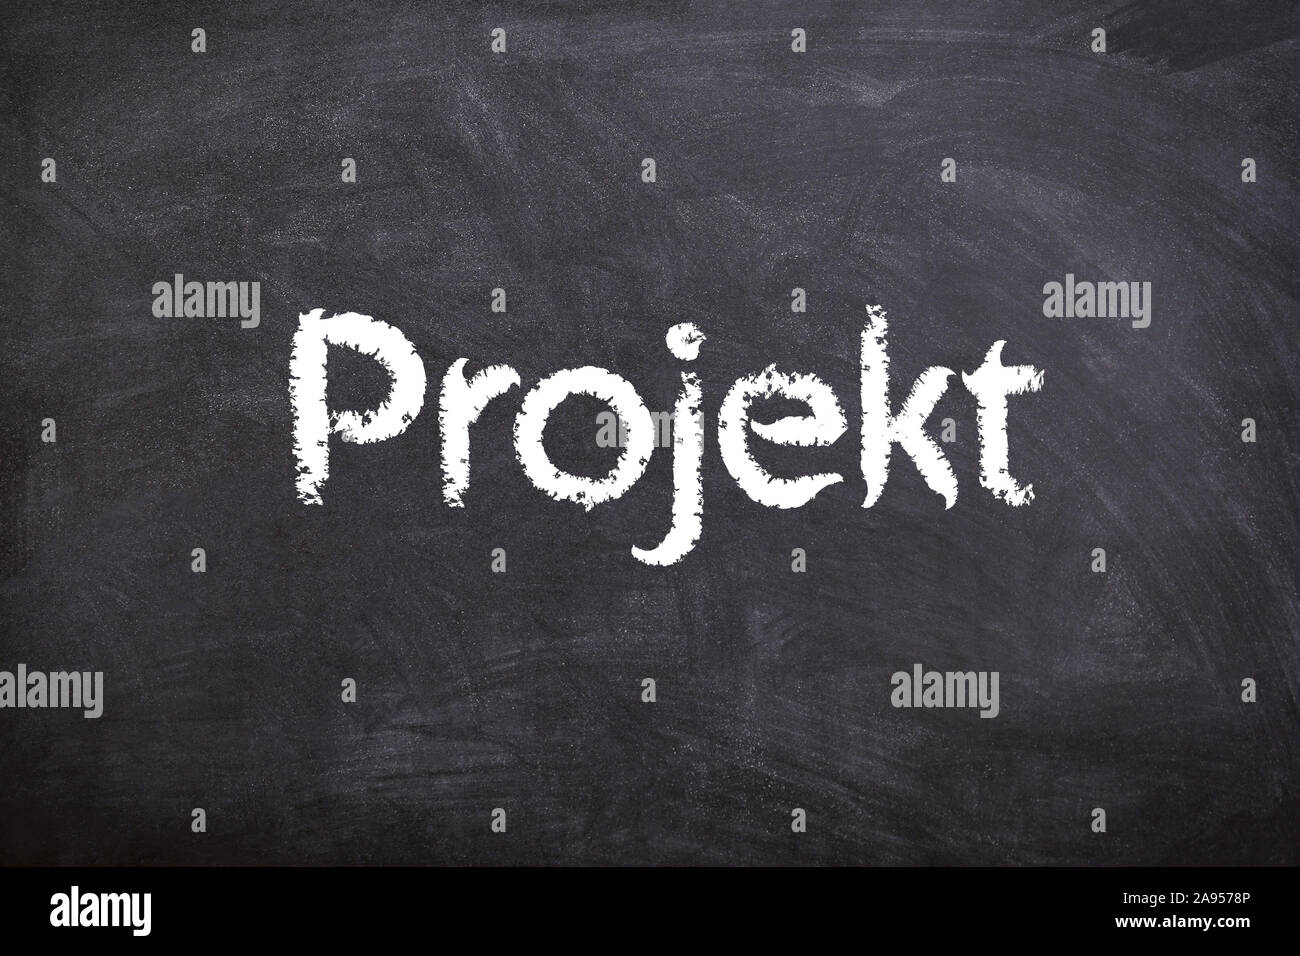 Projekt - Schrift/Font- Kreide/chalk -Tafel/board Foto Stock